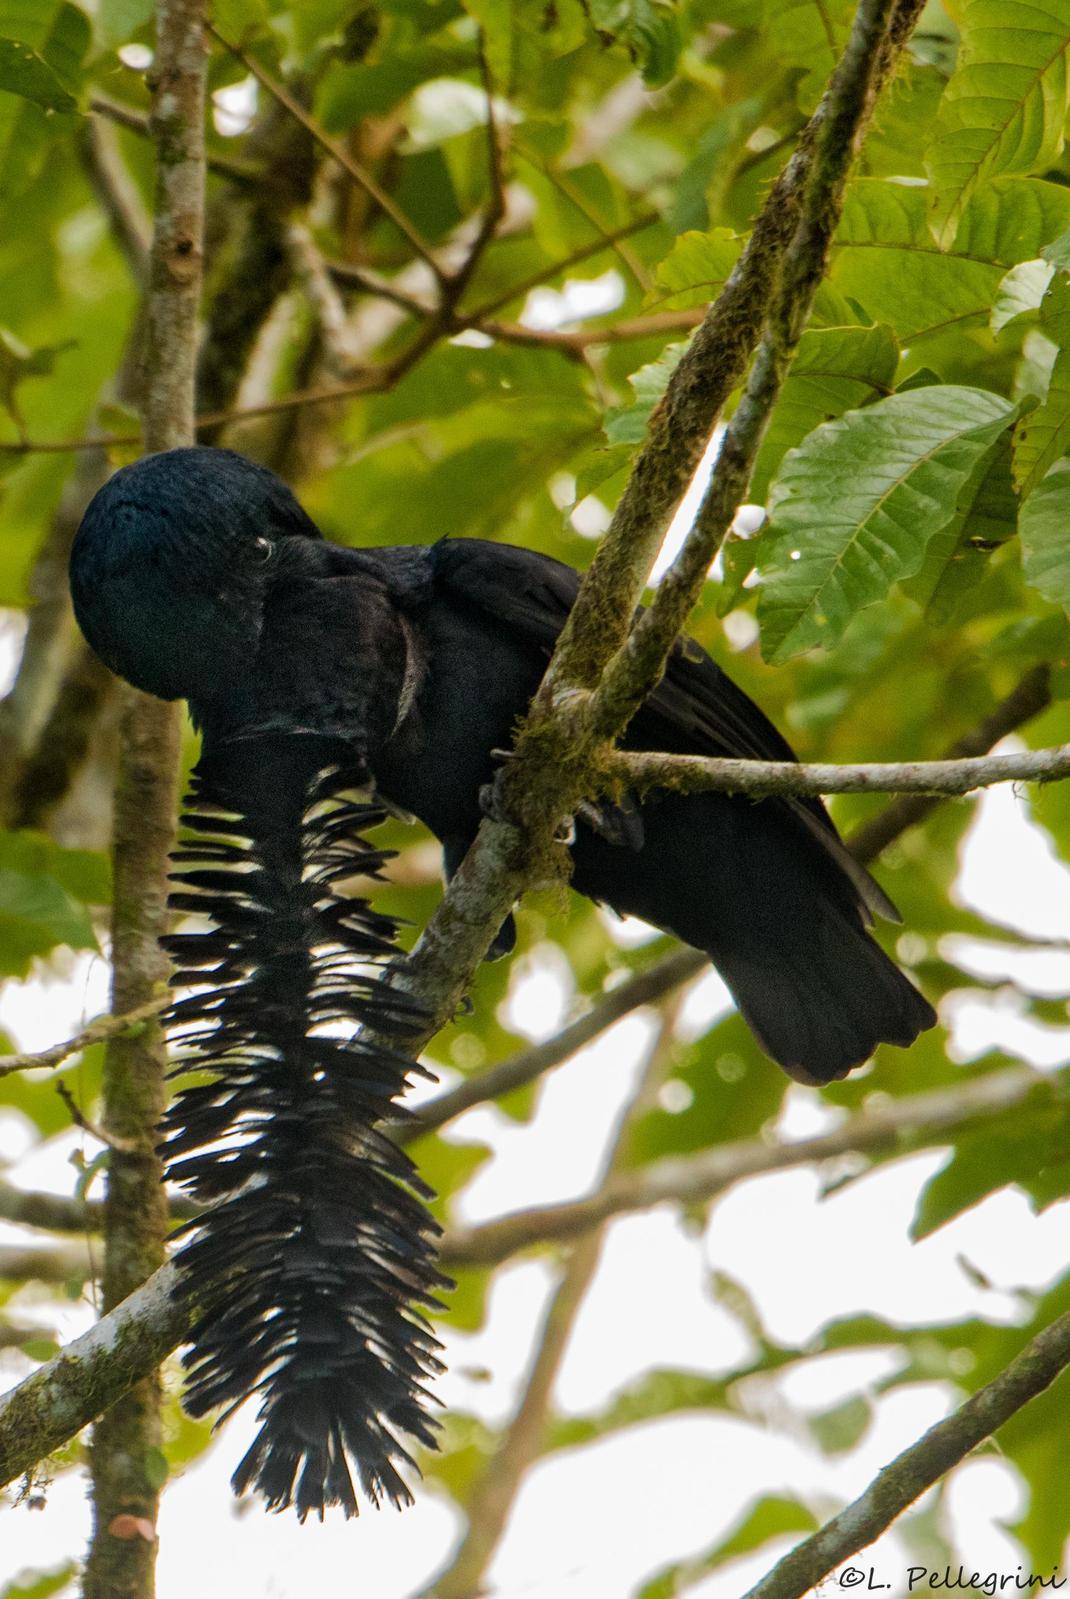 Long-wattled Umbrellabird Photo by Laurence Pellegrini